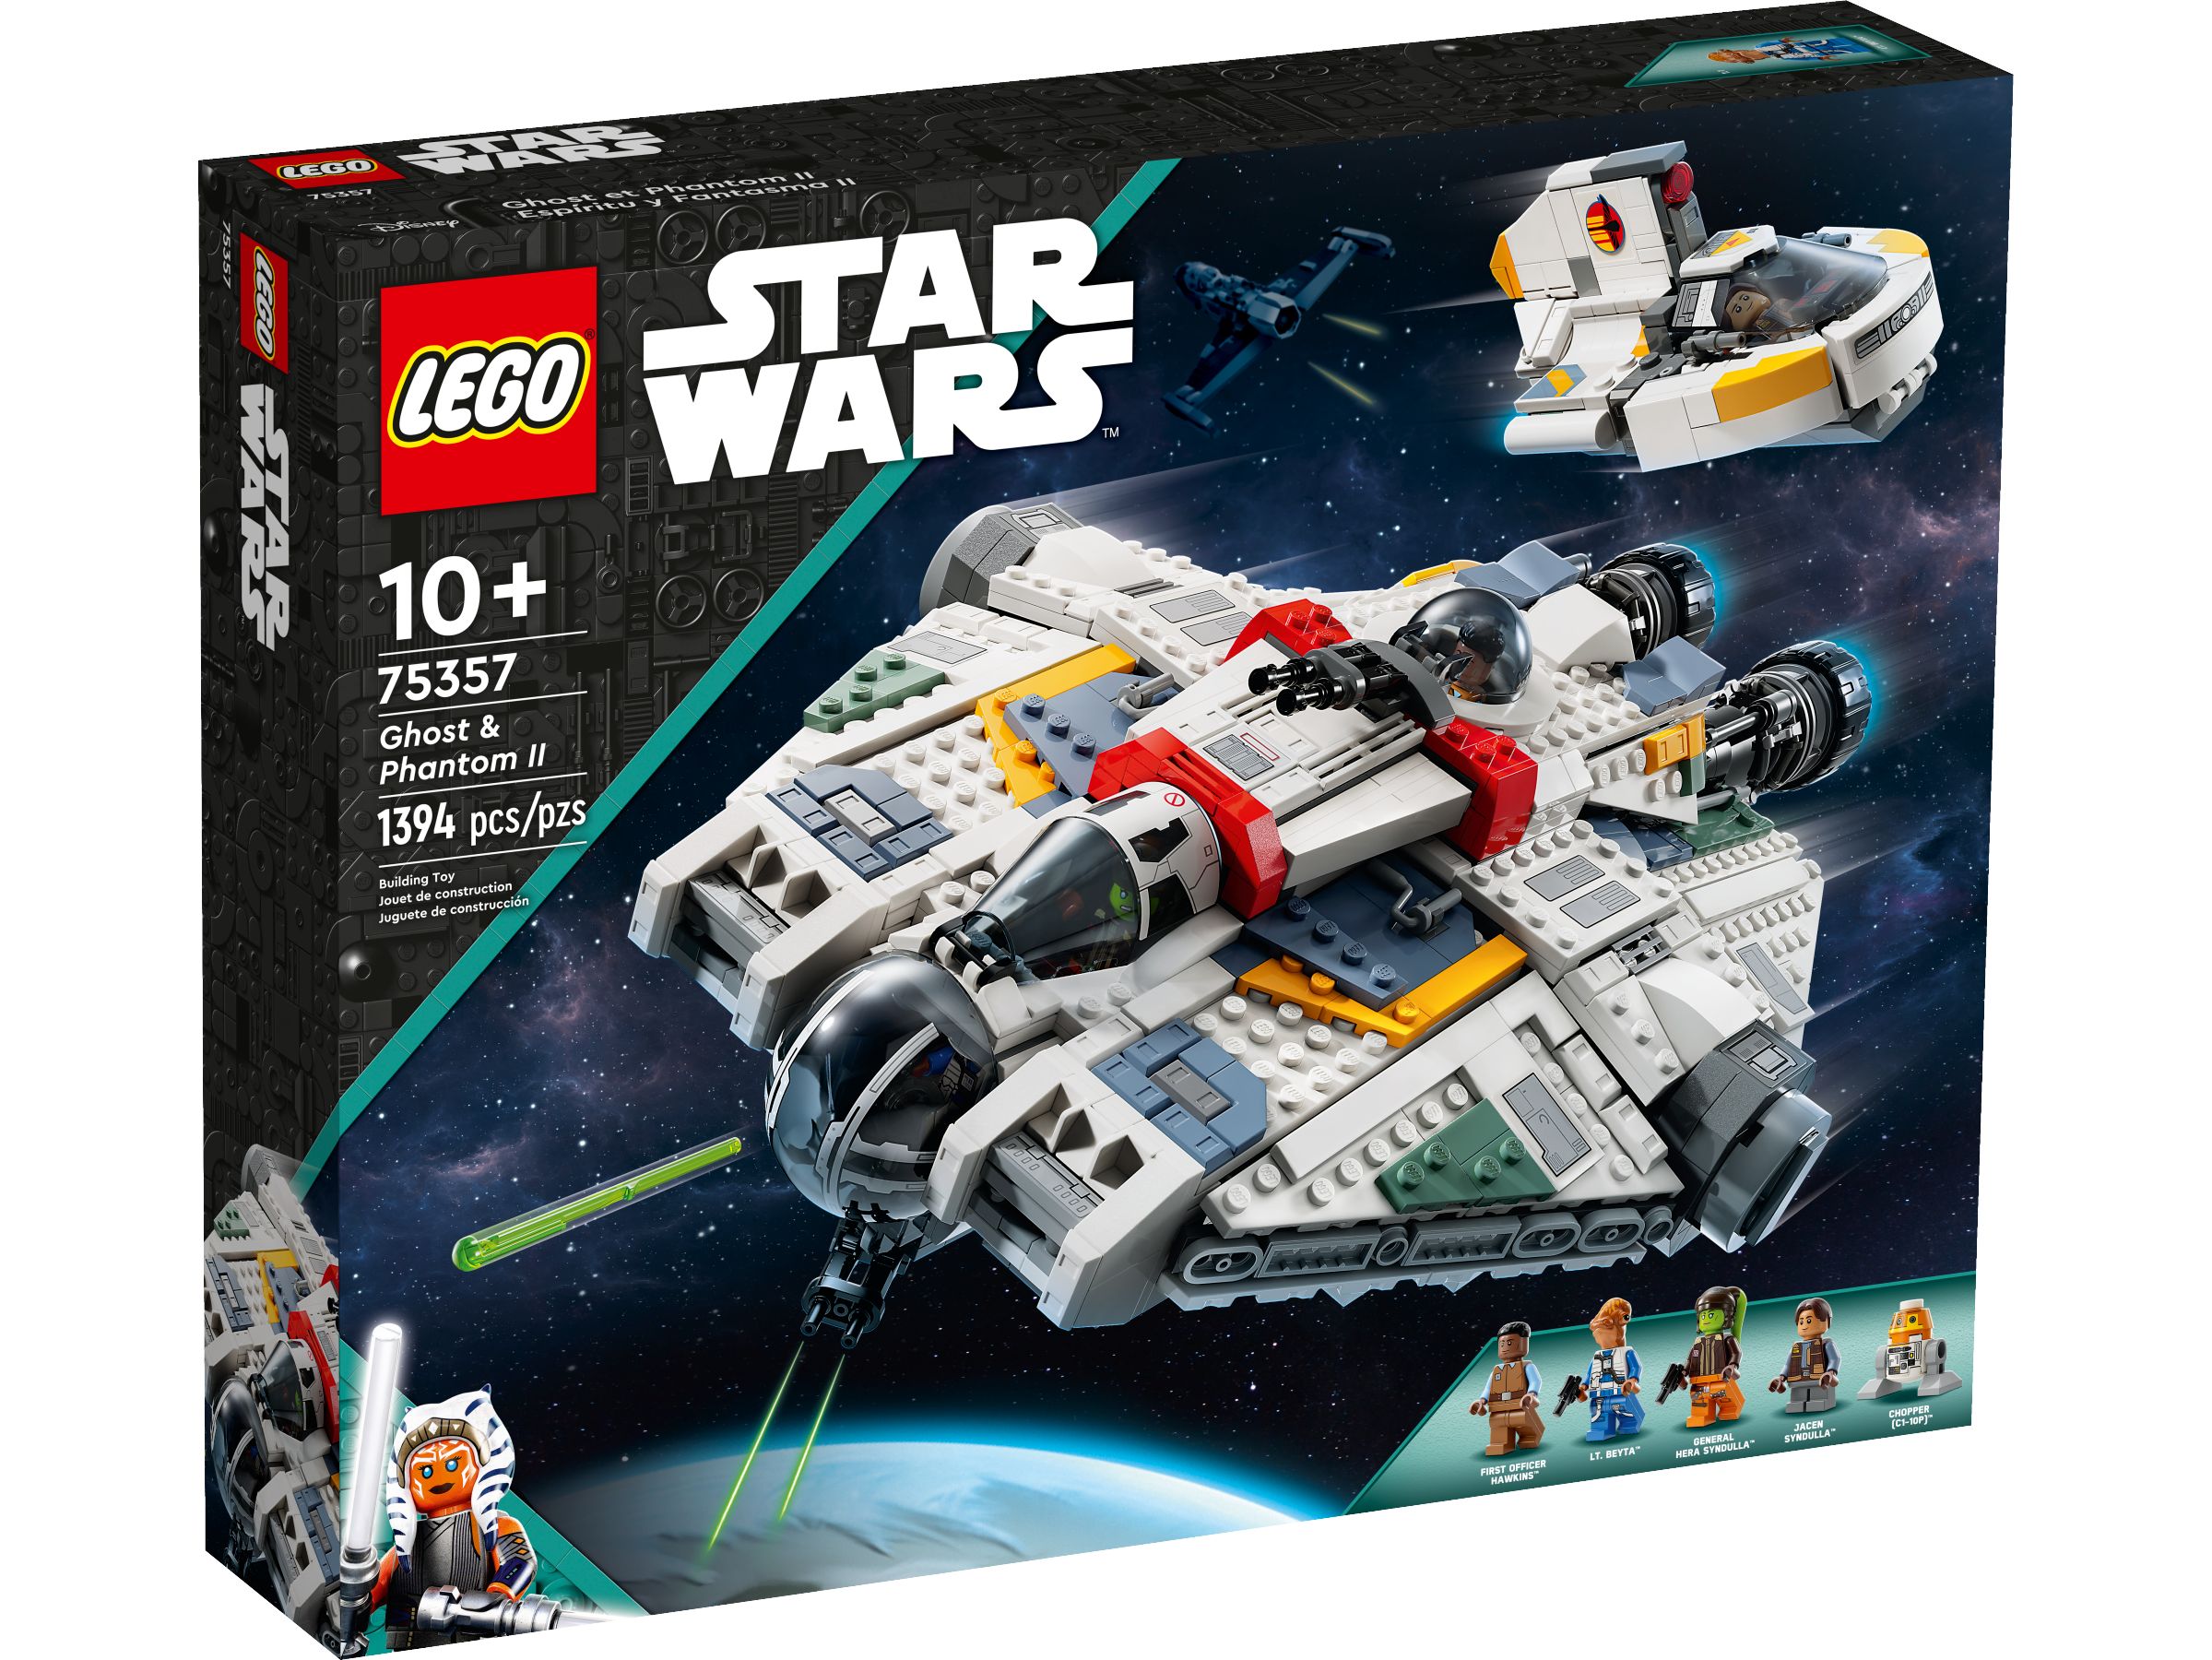 LEGO Star Wars 75357 Ghost & Phantom II LEGO_75357_Box1_v39.jpg